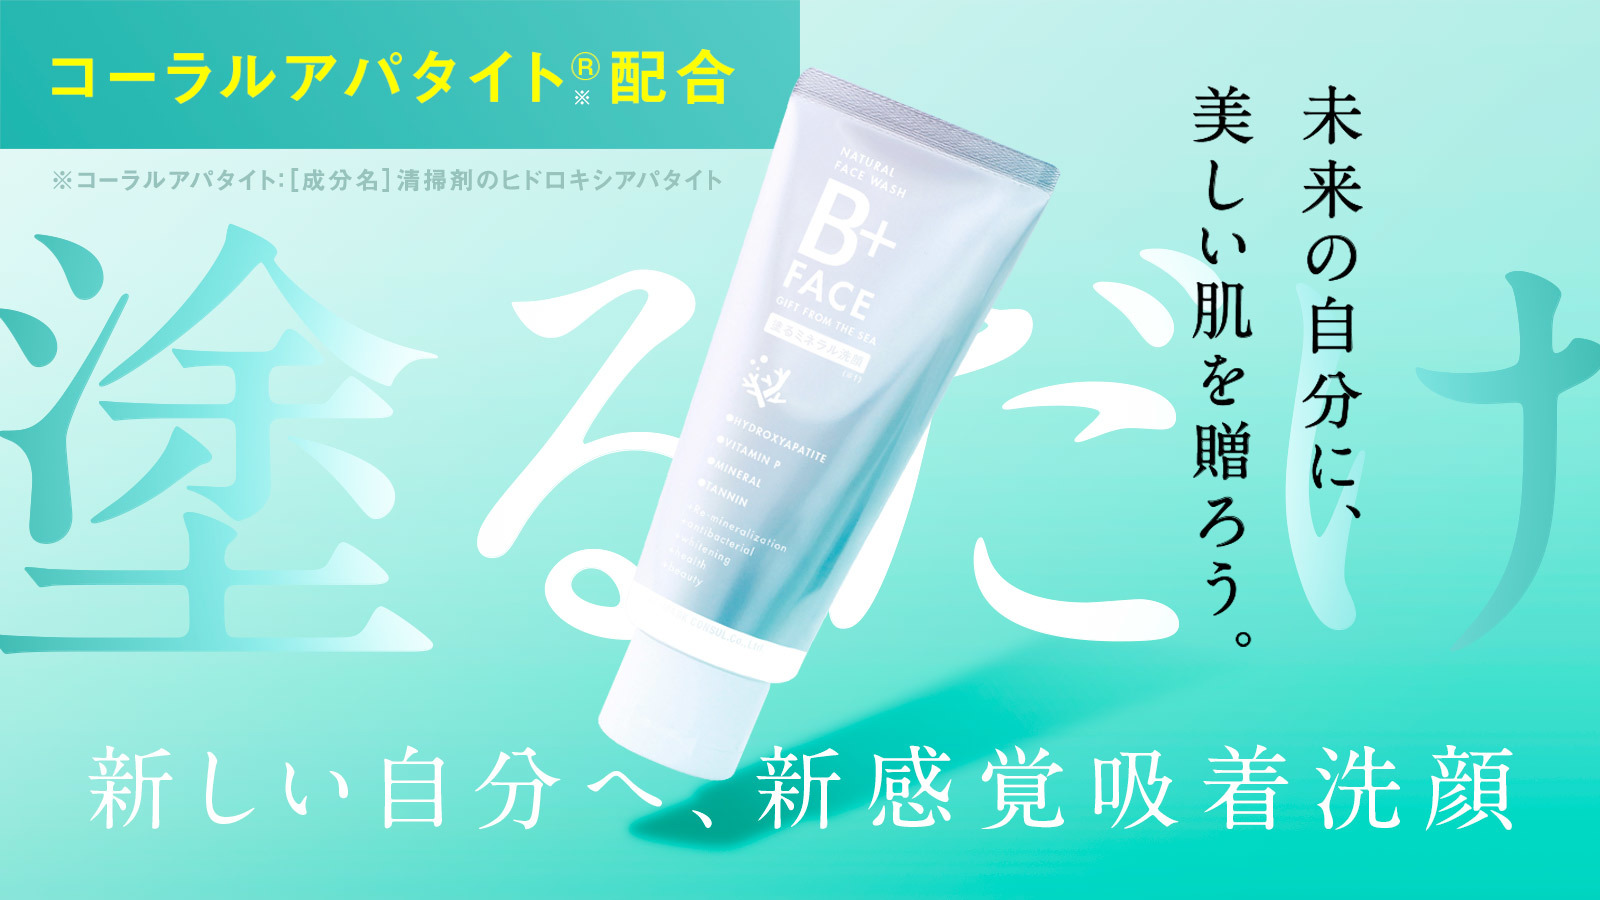 歯磨き粉から生まれた新発想、塗るミネラル洗顔料「B+FACE」
10月4日より応援購入サービス Makuakeにて先行予約販売開始